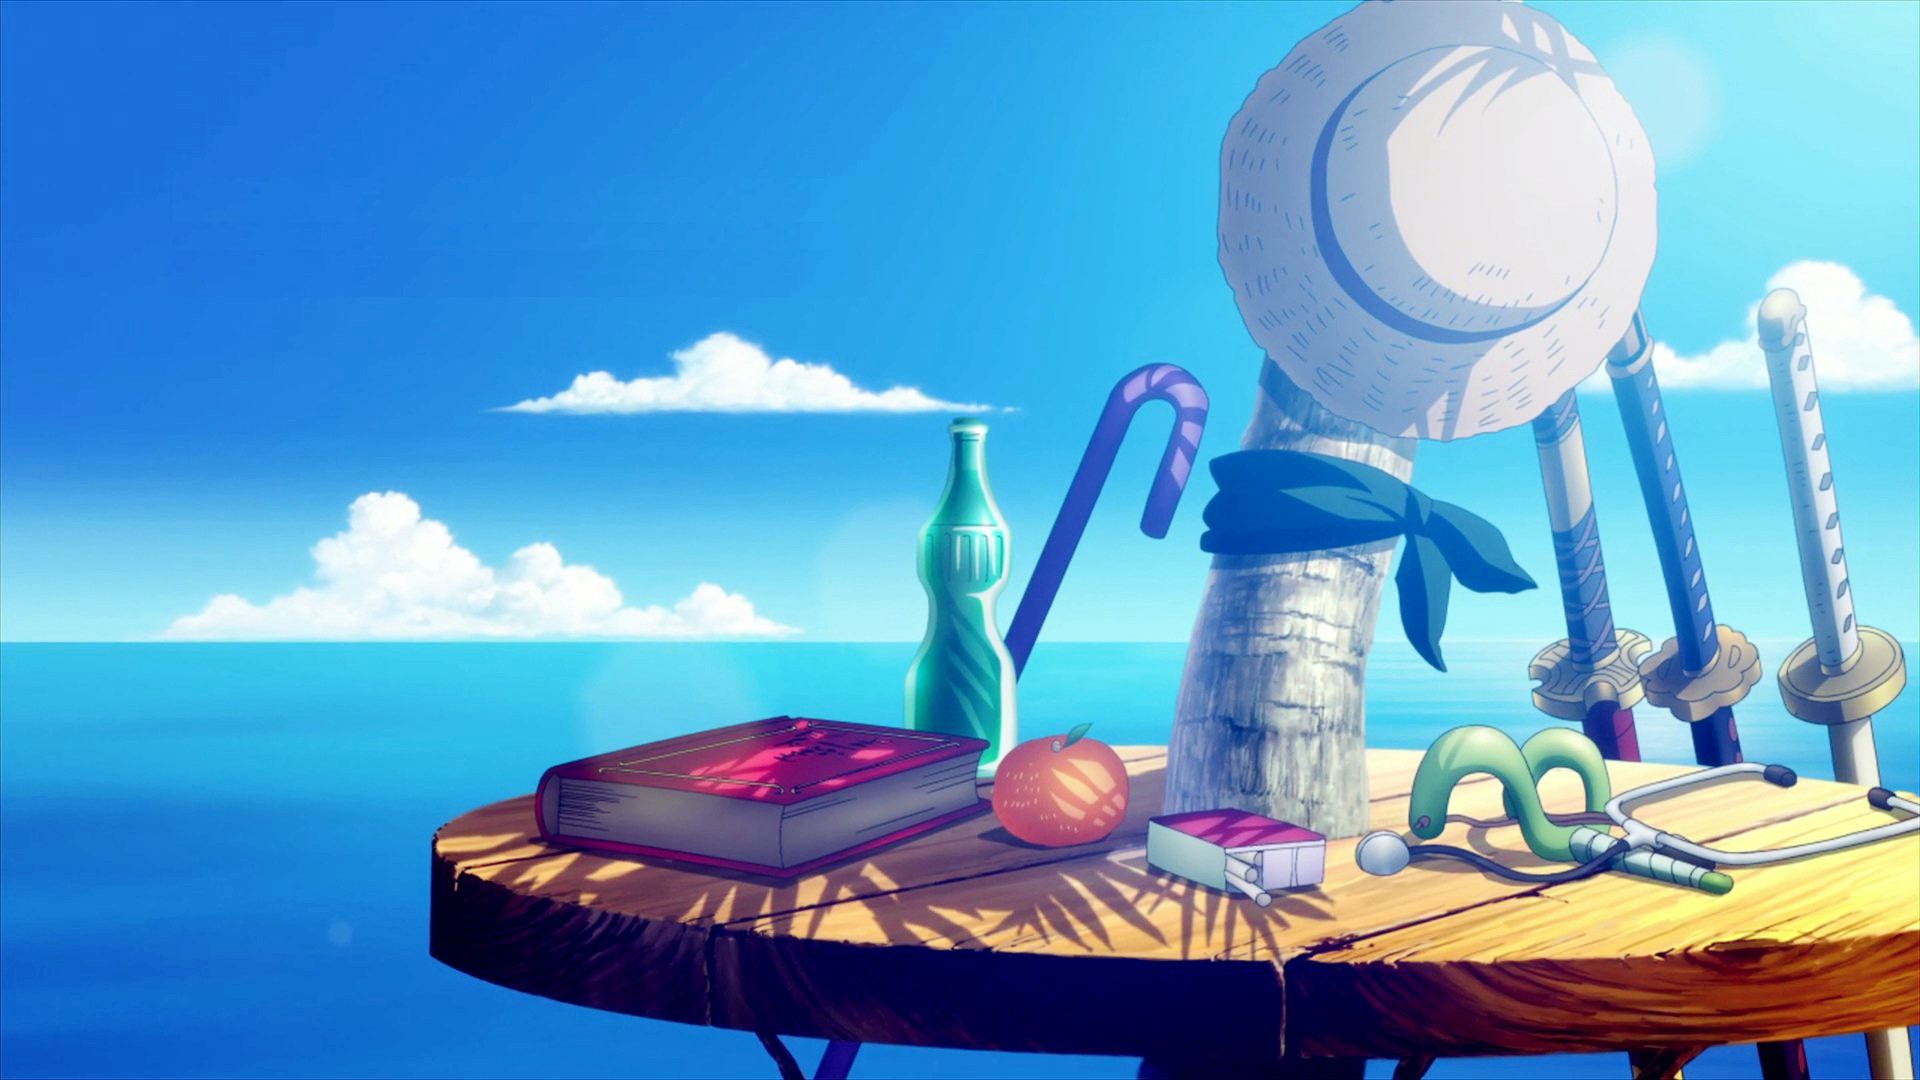 Sea of Fools - một biển đại dương với vô vàn bí ẩn và khám phá đang chờ đón những người yêu thích One Piece. Điều tuyệt vời hơn nữa là bạn có thể trải nghiệm ngay trên màn hình điện thoại của mình với những bức ảnh đẹp như tranh vẽ.